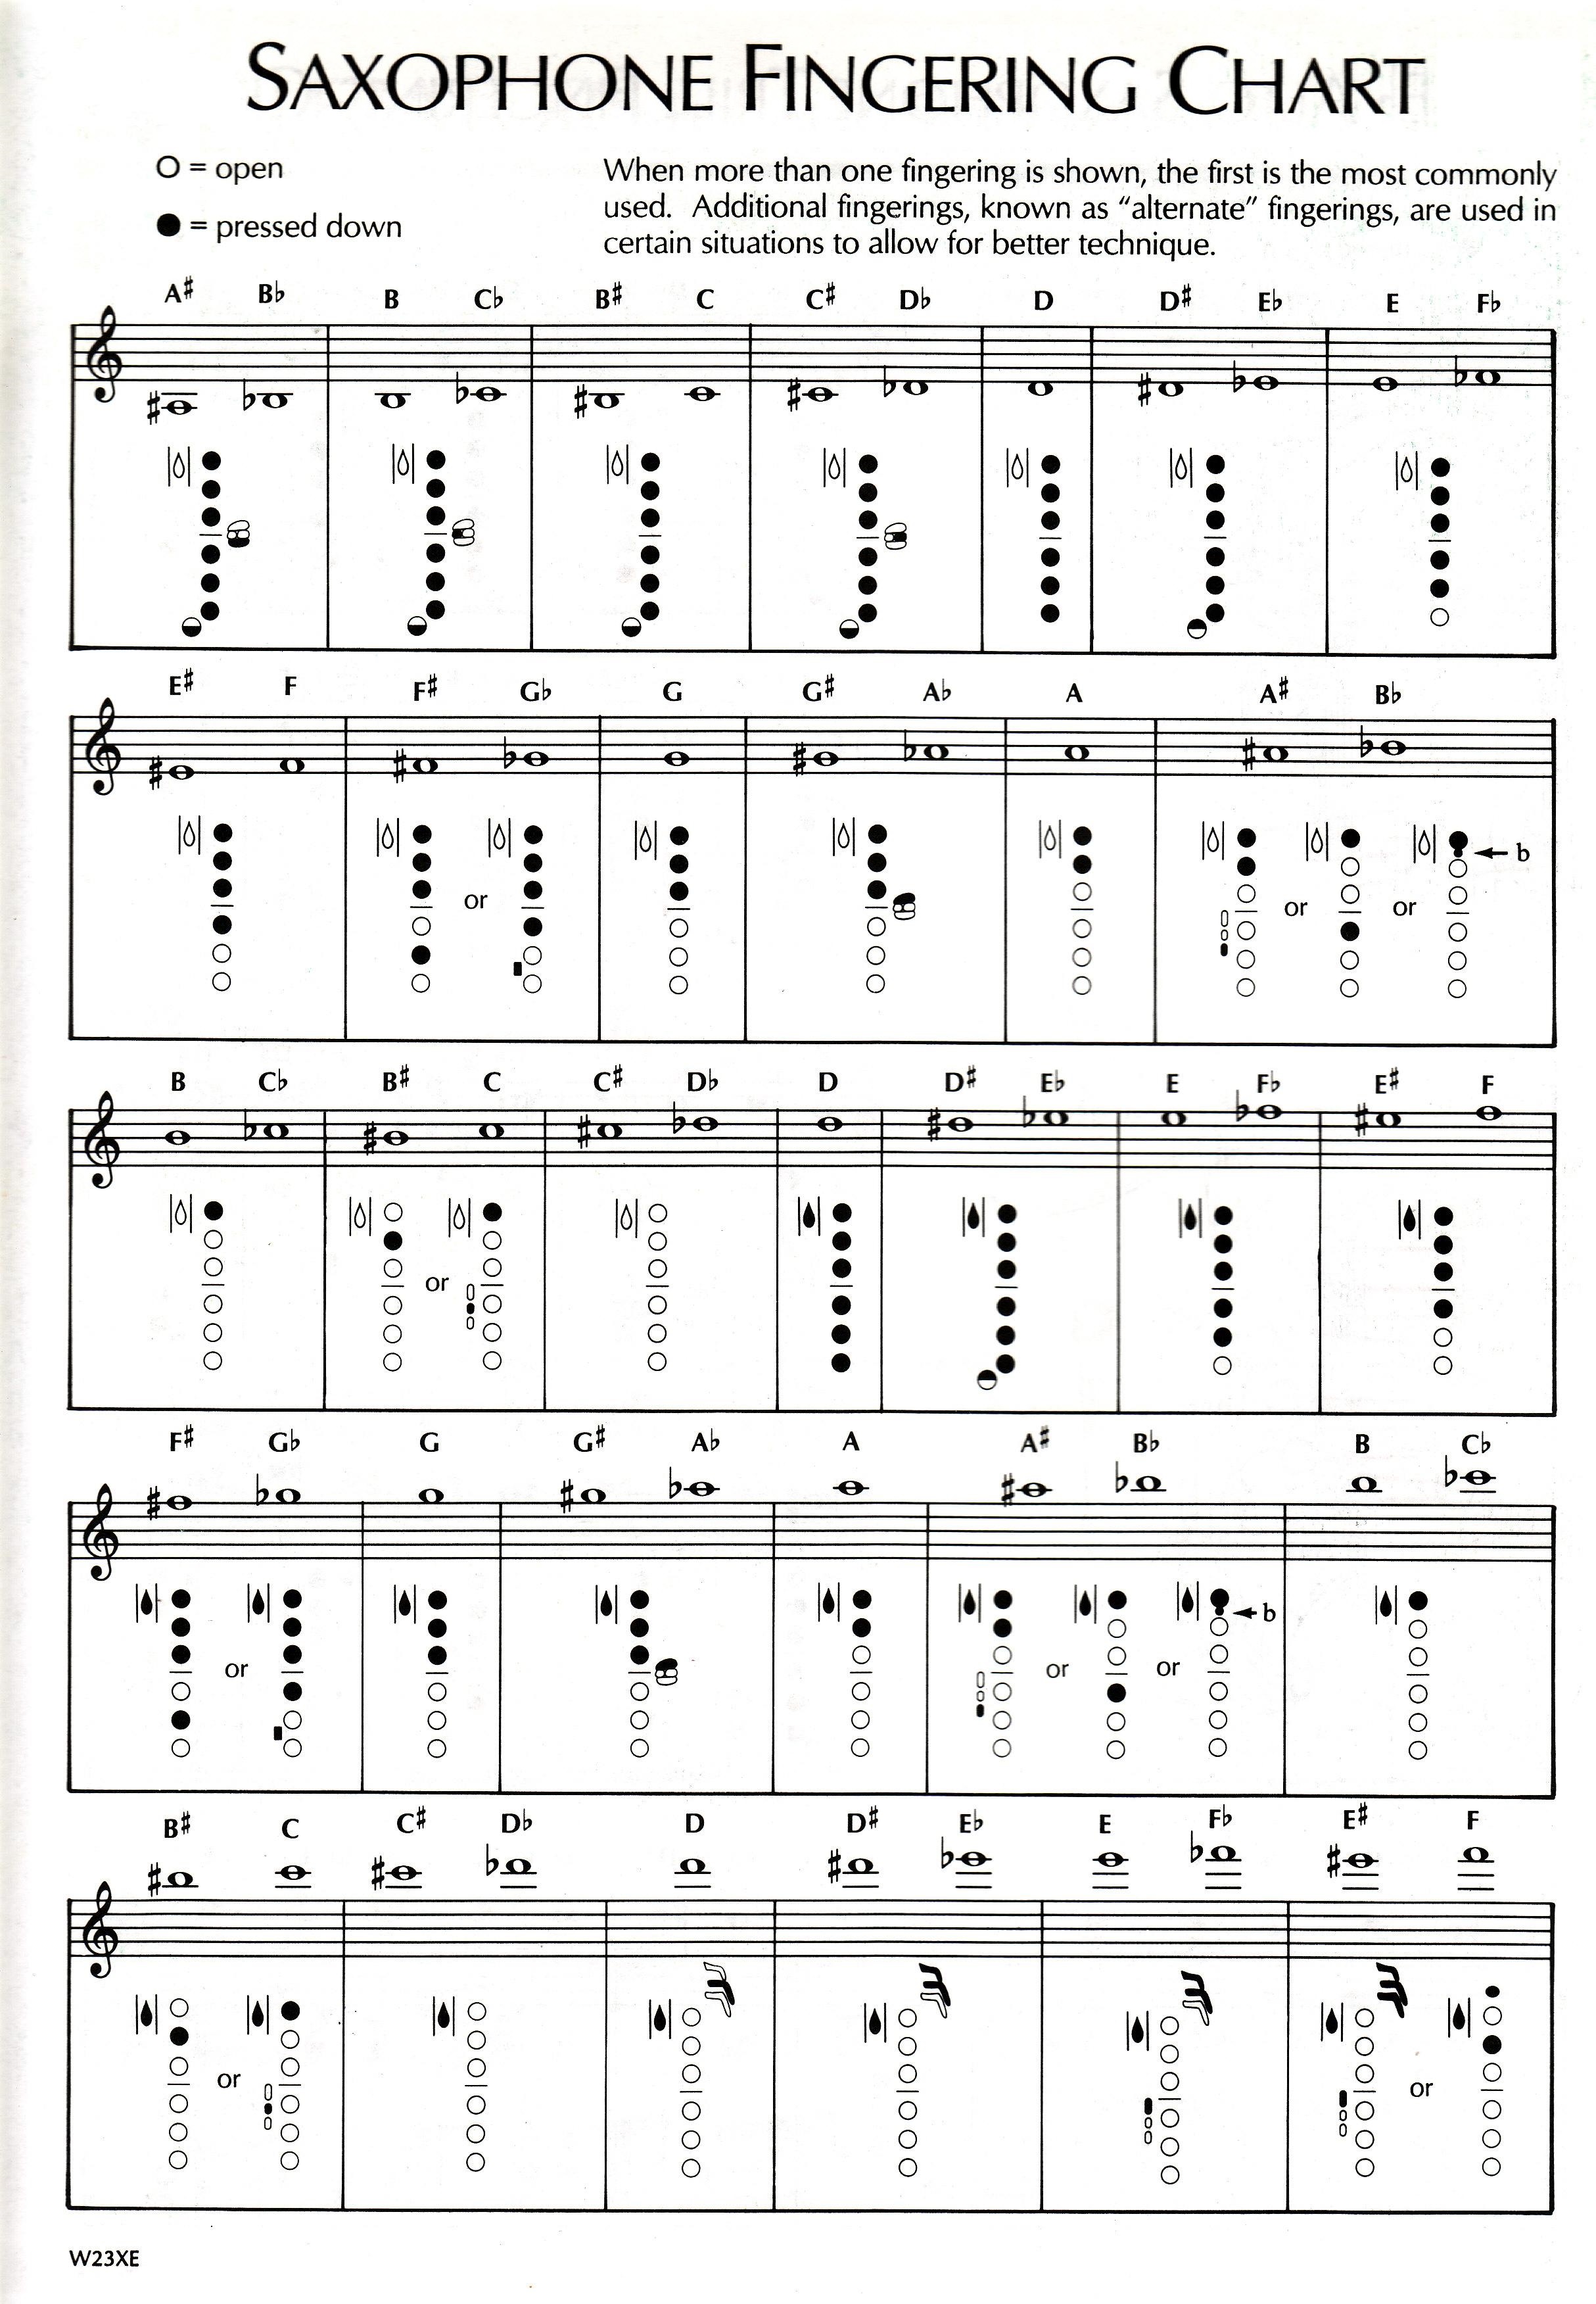 Tuba Key Chart